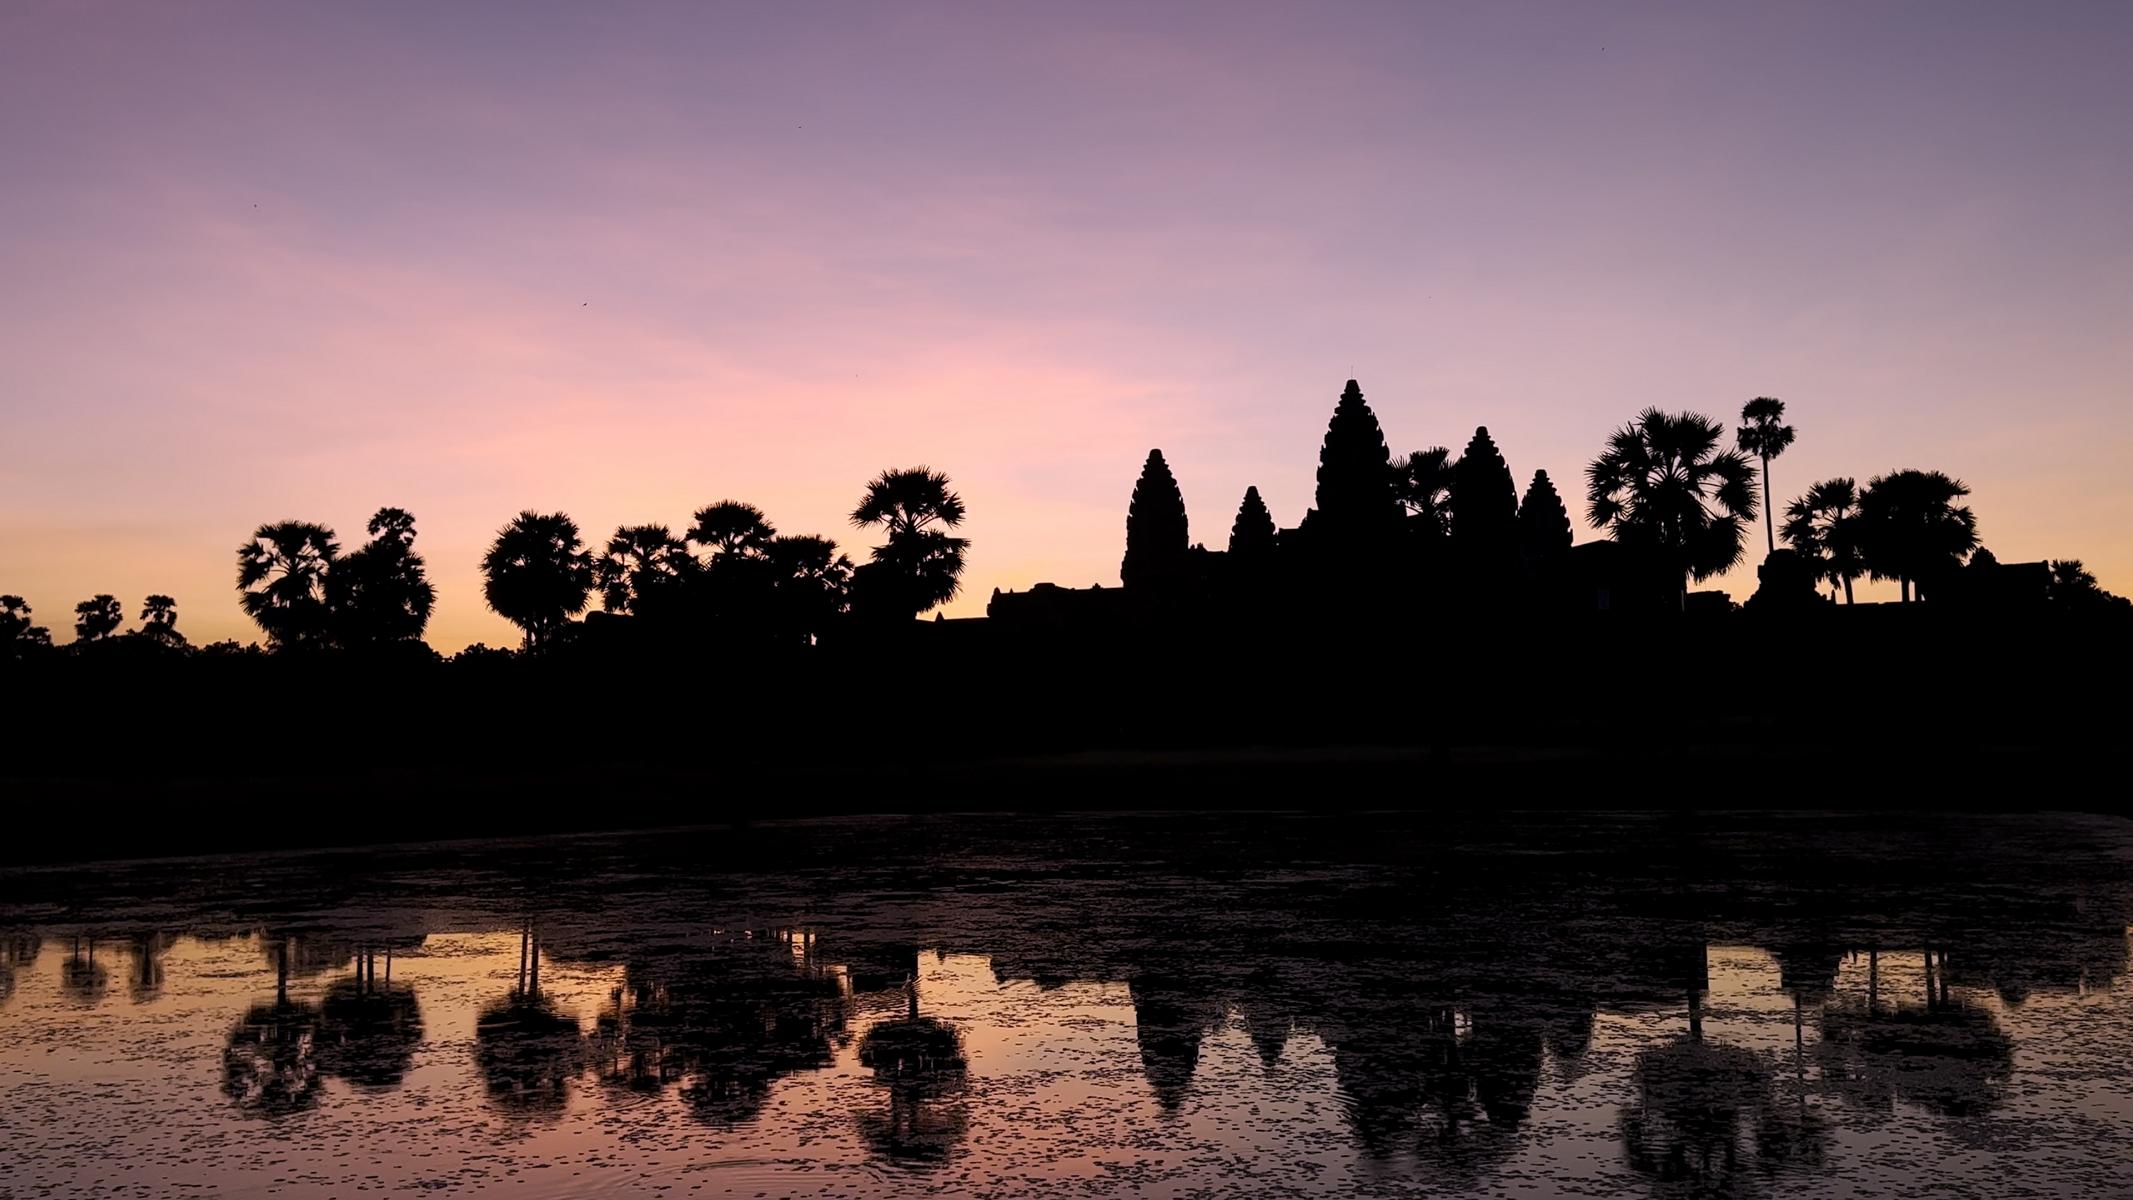 Angkor (23)